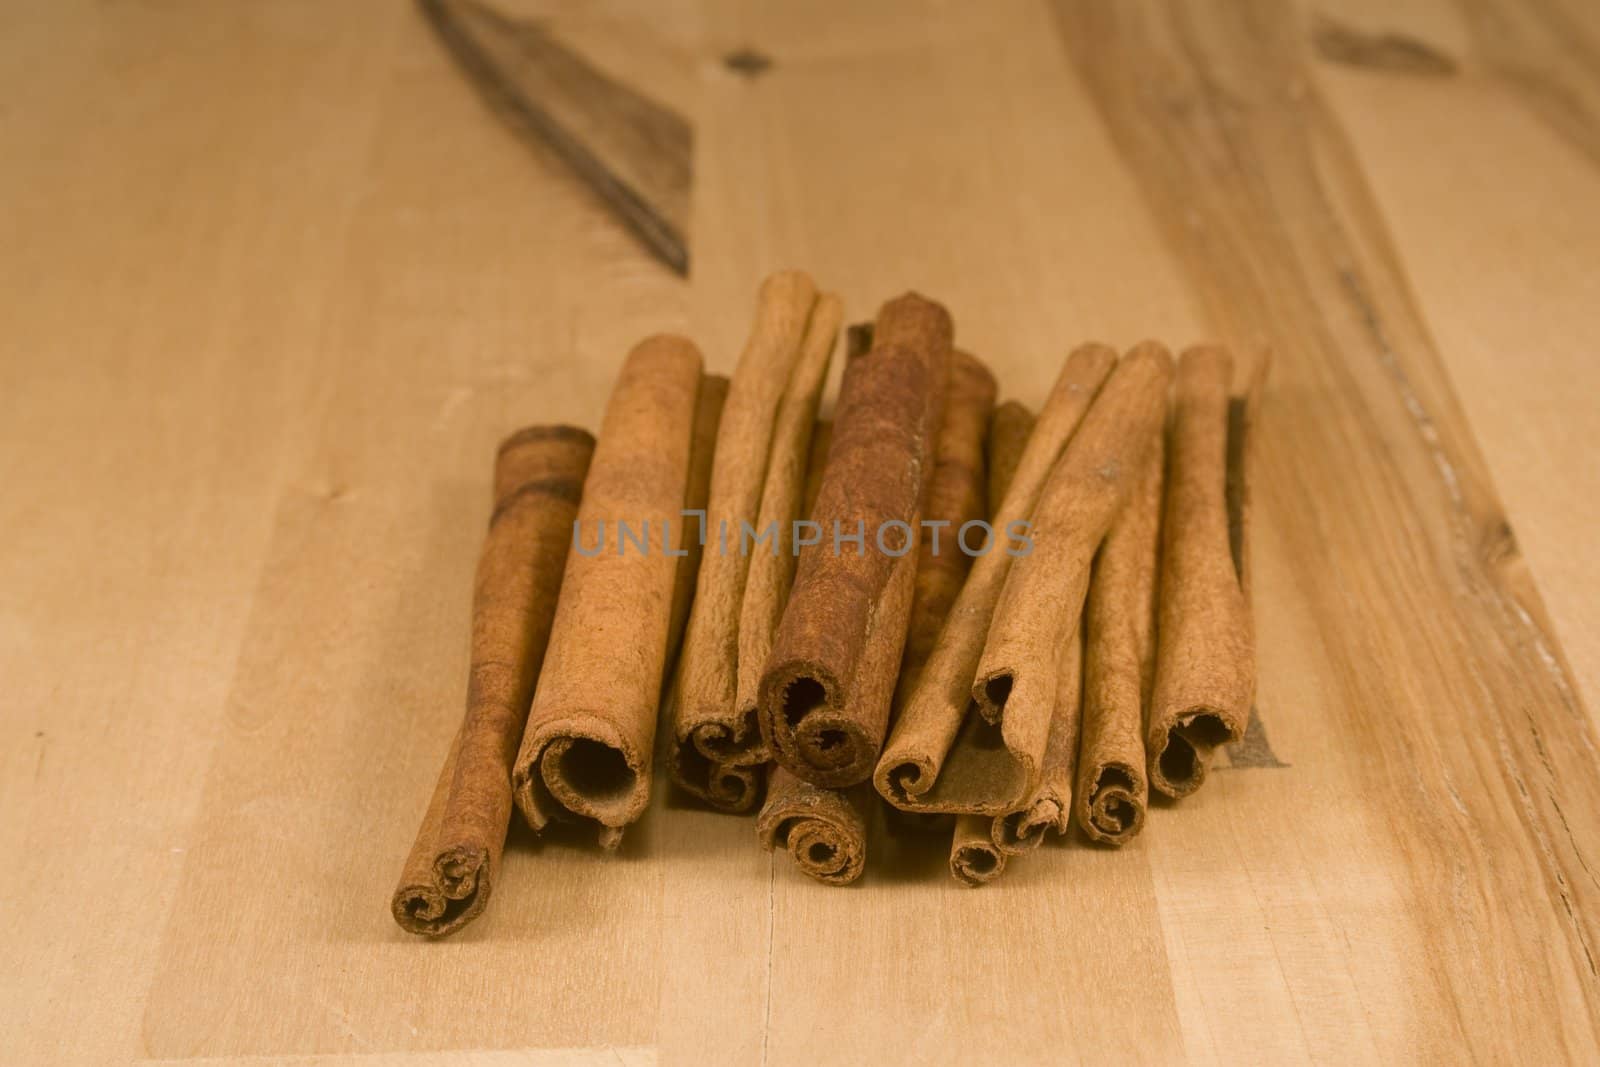 Cinnamon sticks on wood